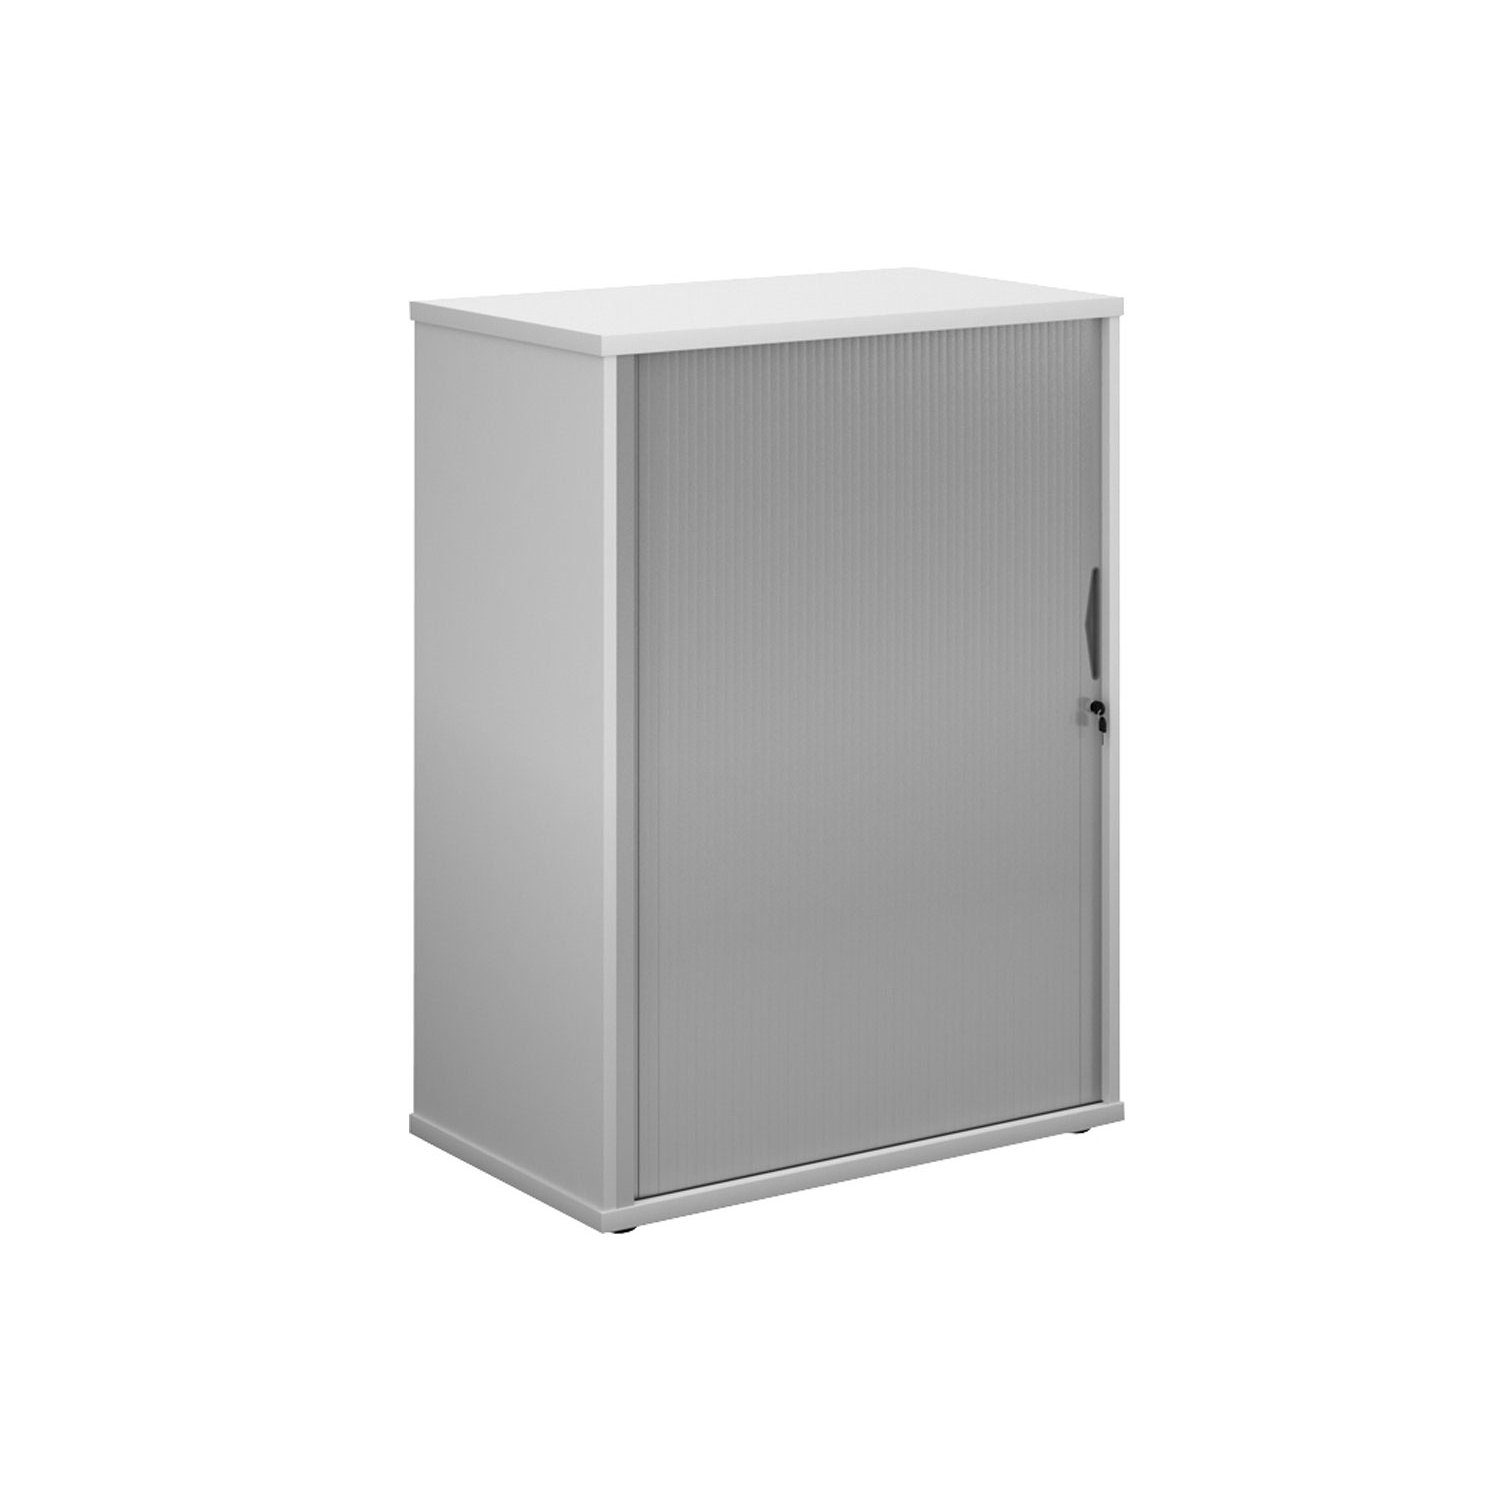 Single Door Wooden Tambour Cupboard, 2 Shelf - 80wx47dx109h (cm), White